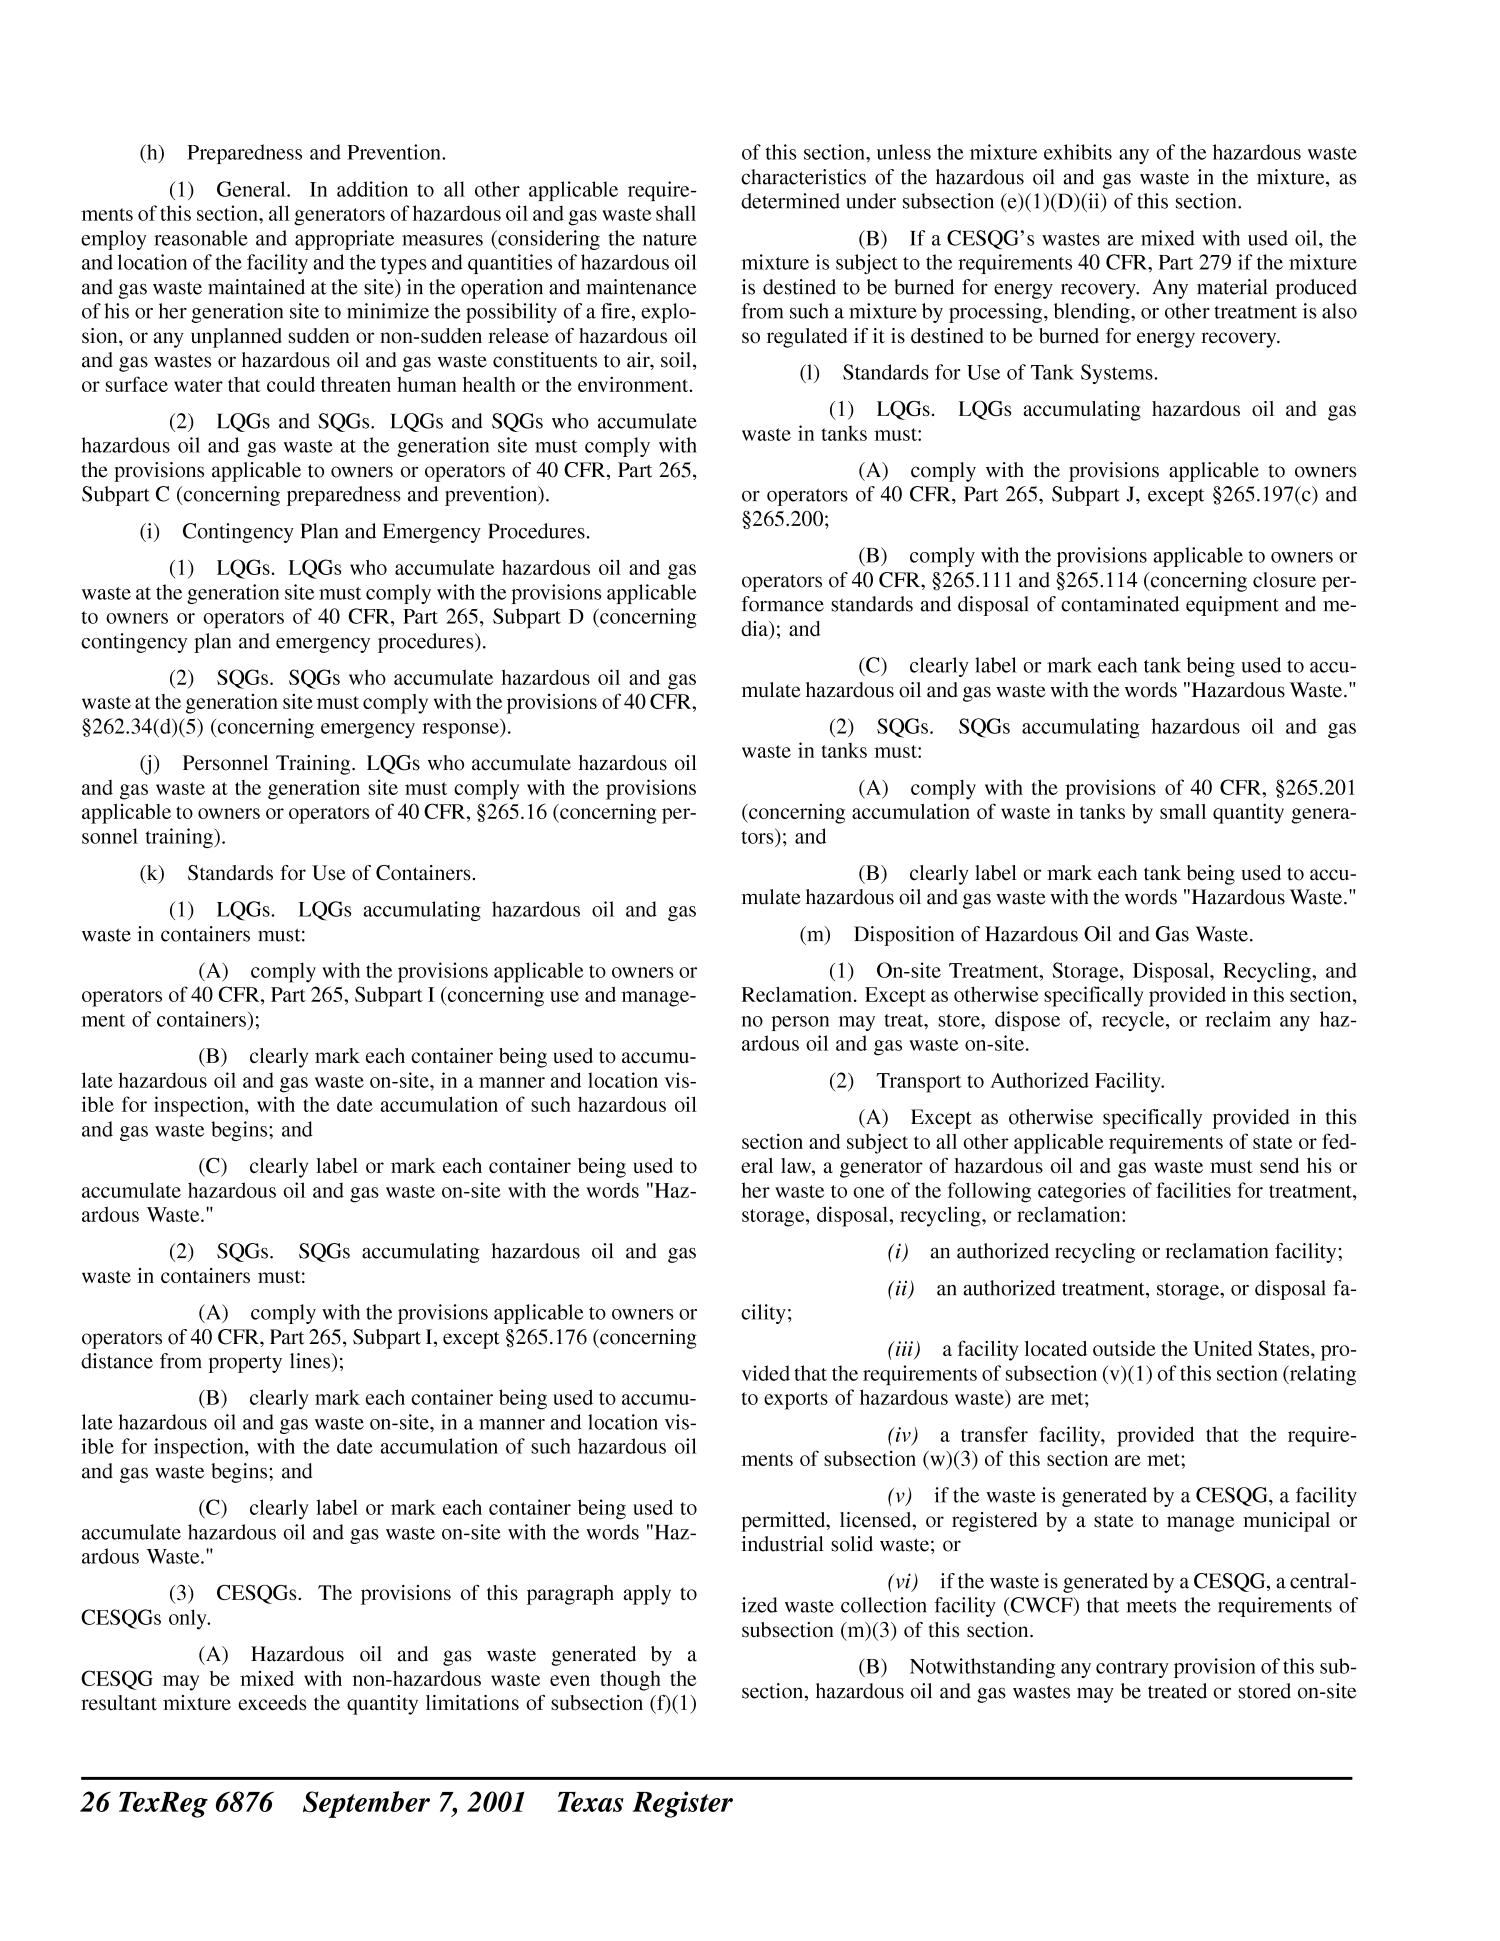 Texas Register, Volume 26, Number 36, Pages 6803-7008, September 7, 2001
                                                
                                                    6876
                                                